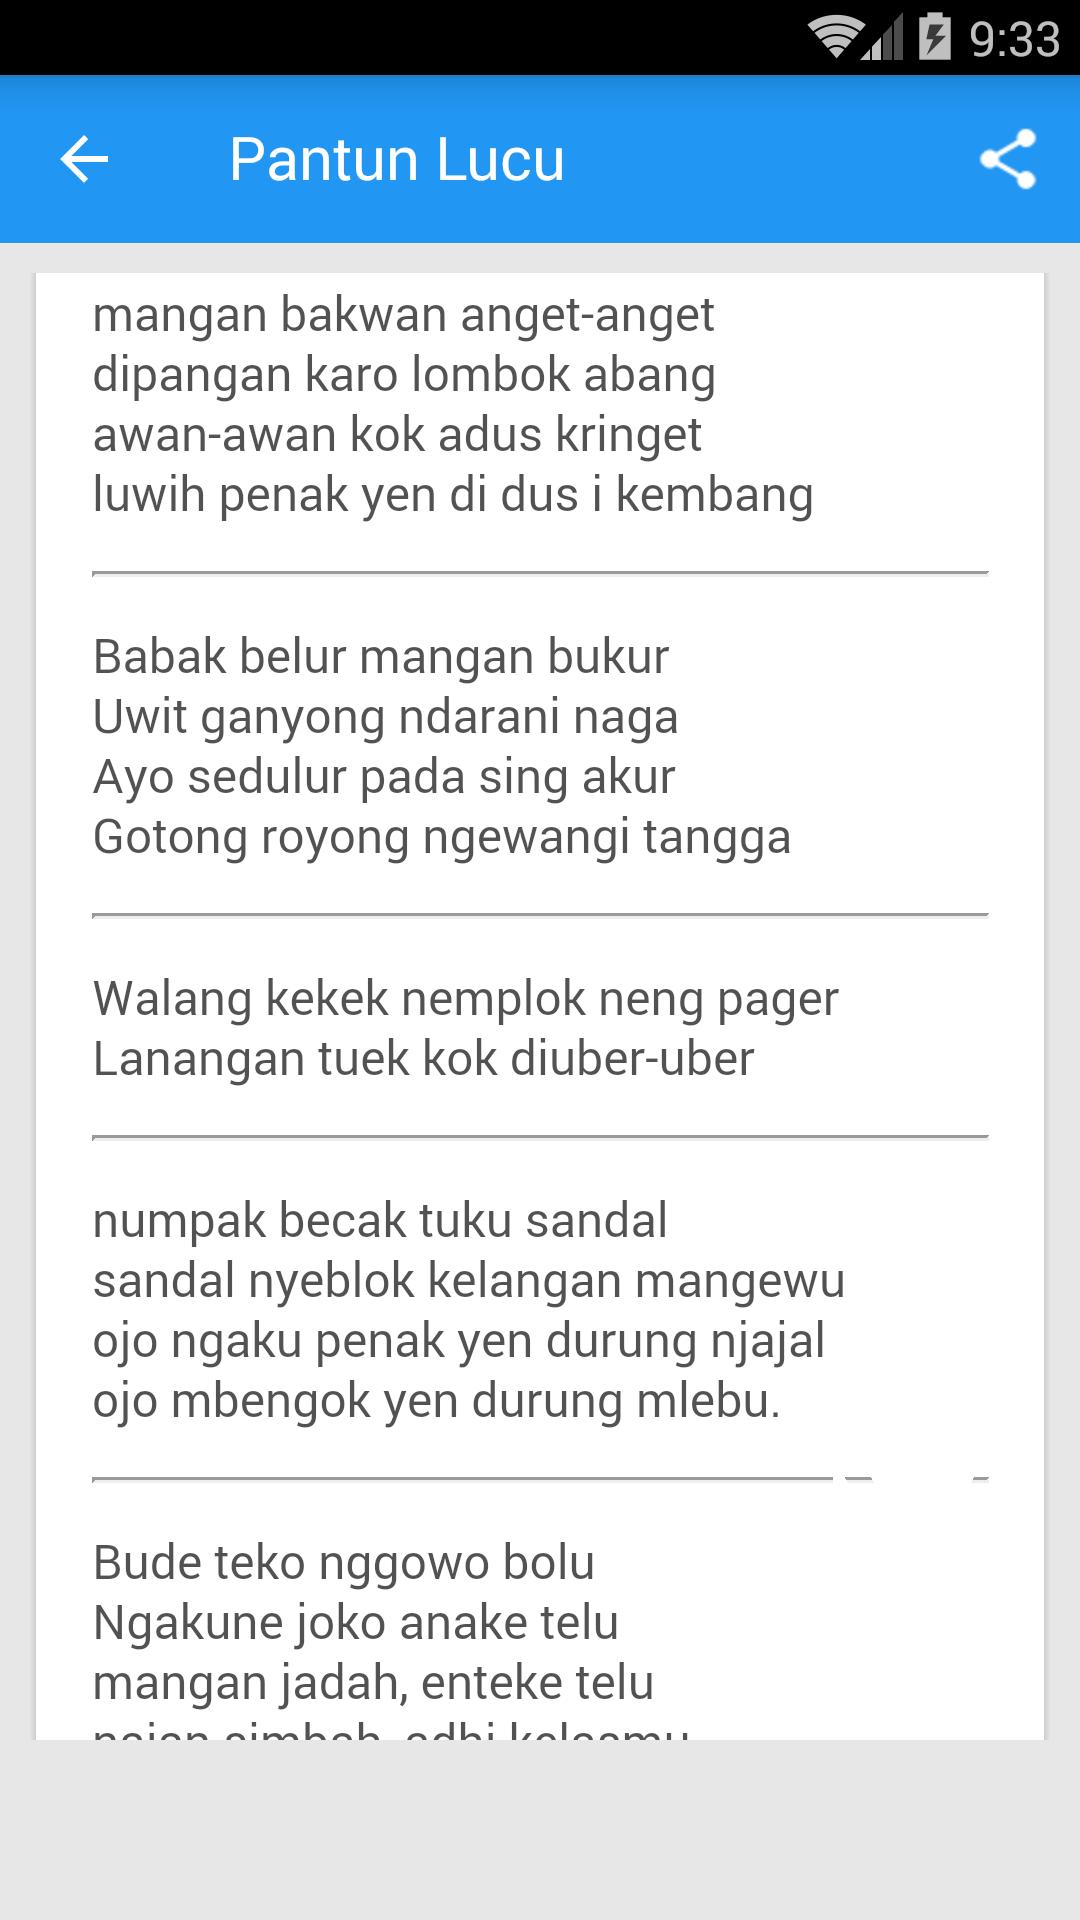 Pantun Lucu Bahasa Jawa For Android Apk Download